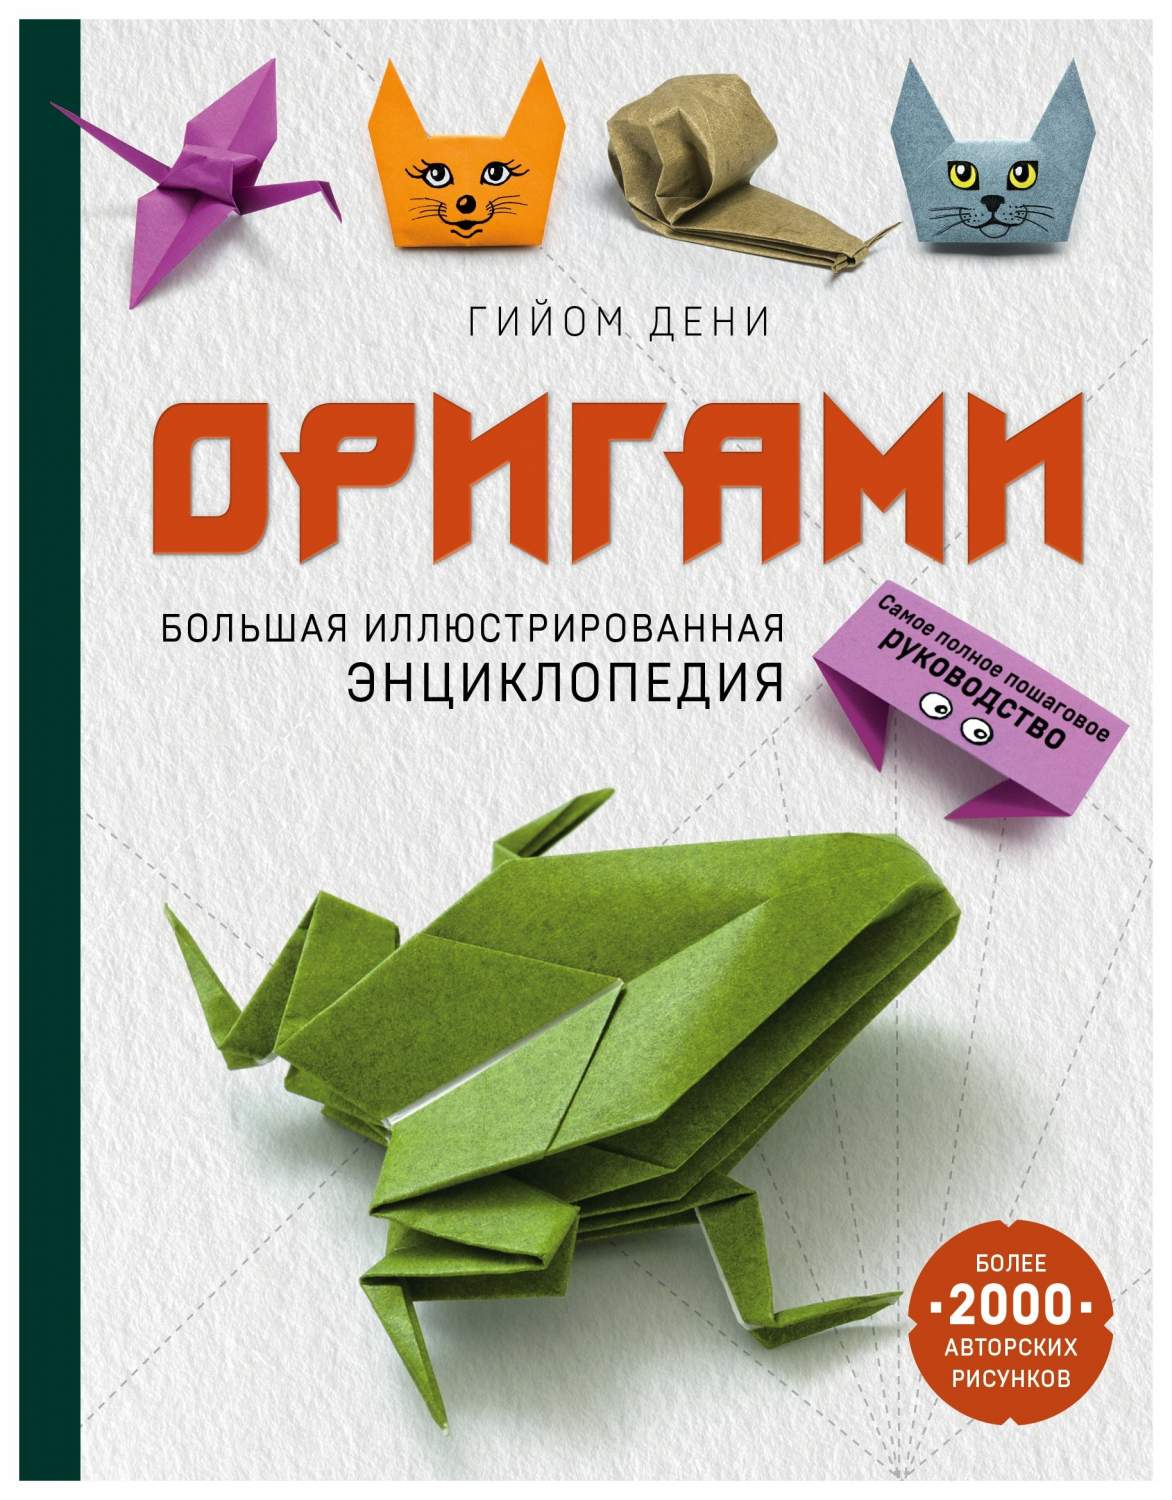 Самые древние поделки оригами